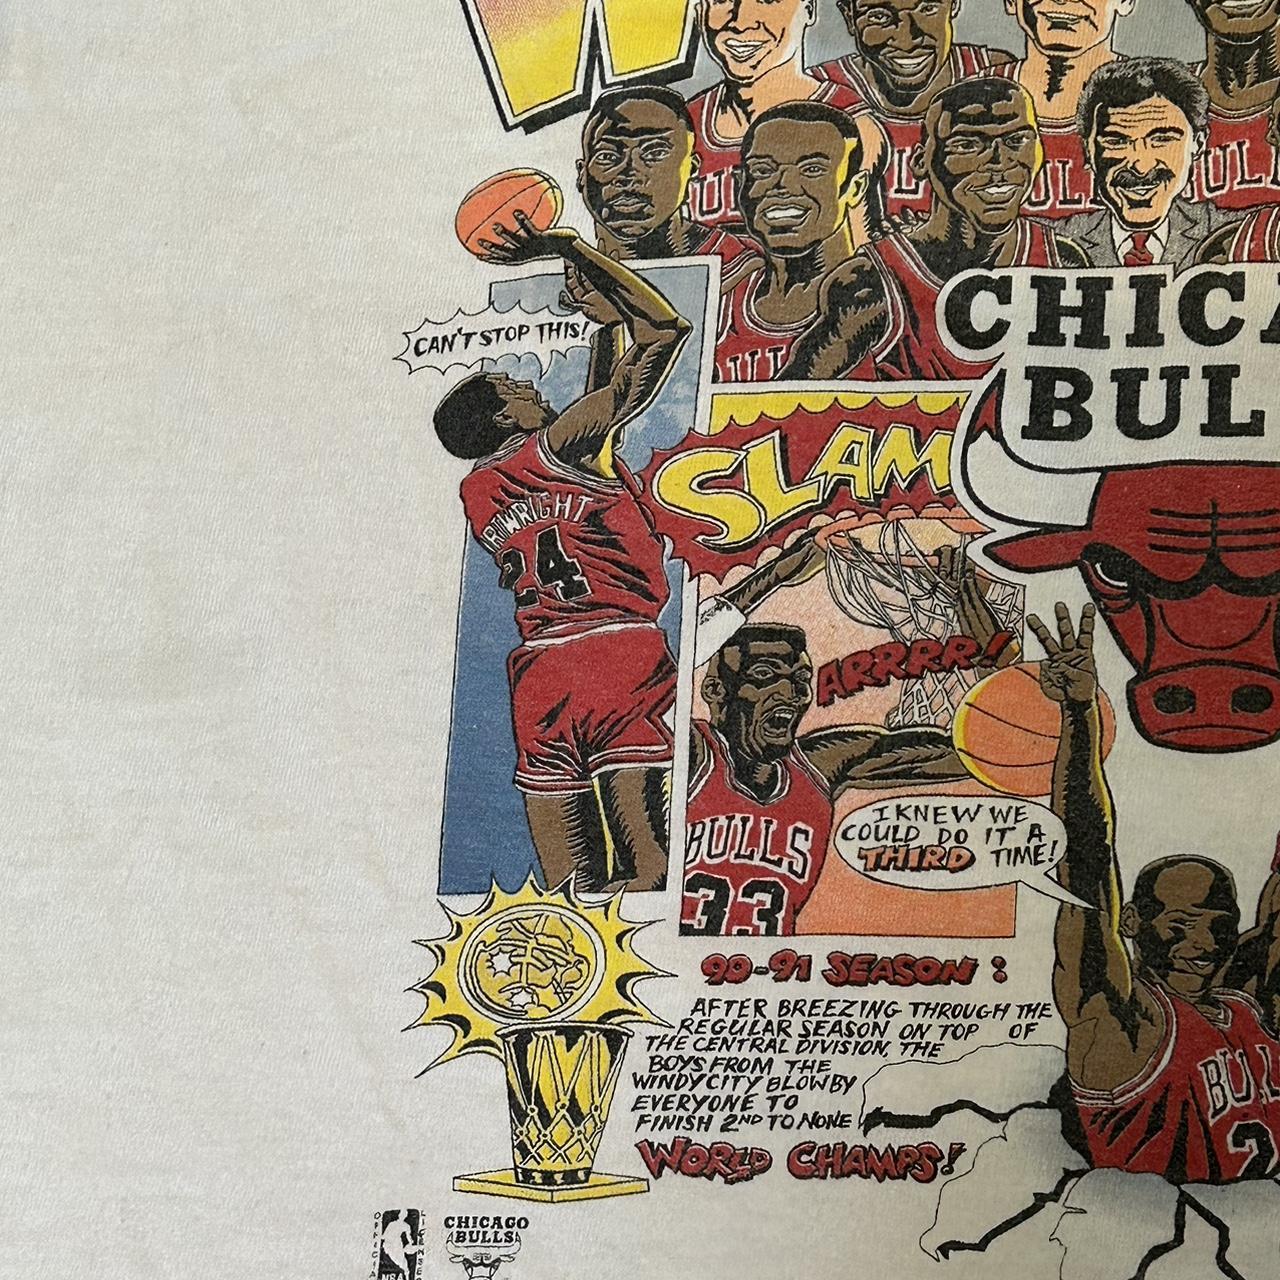 Vintage 1993 Chicago Bulls 3 Peat Tee on a Salem